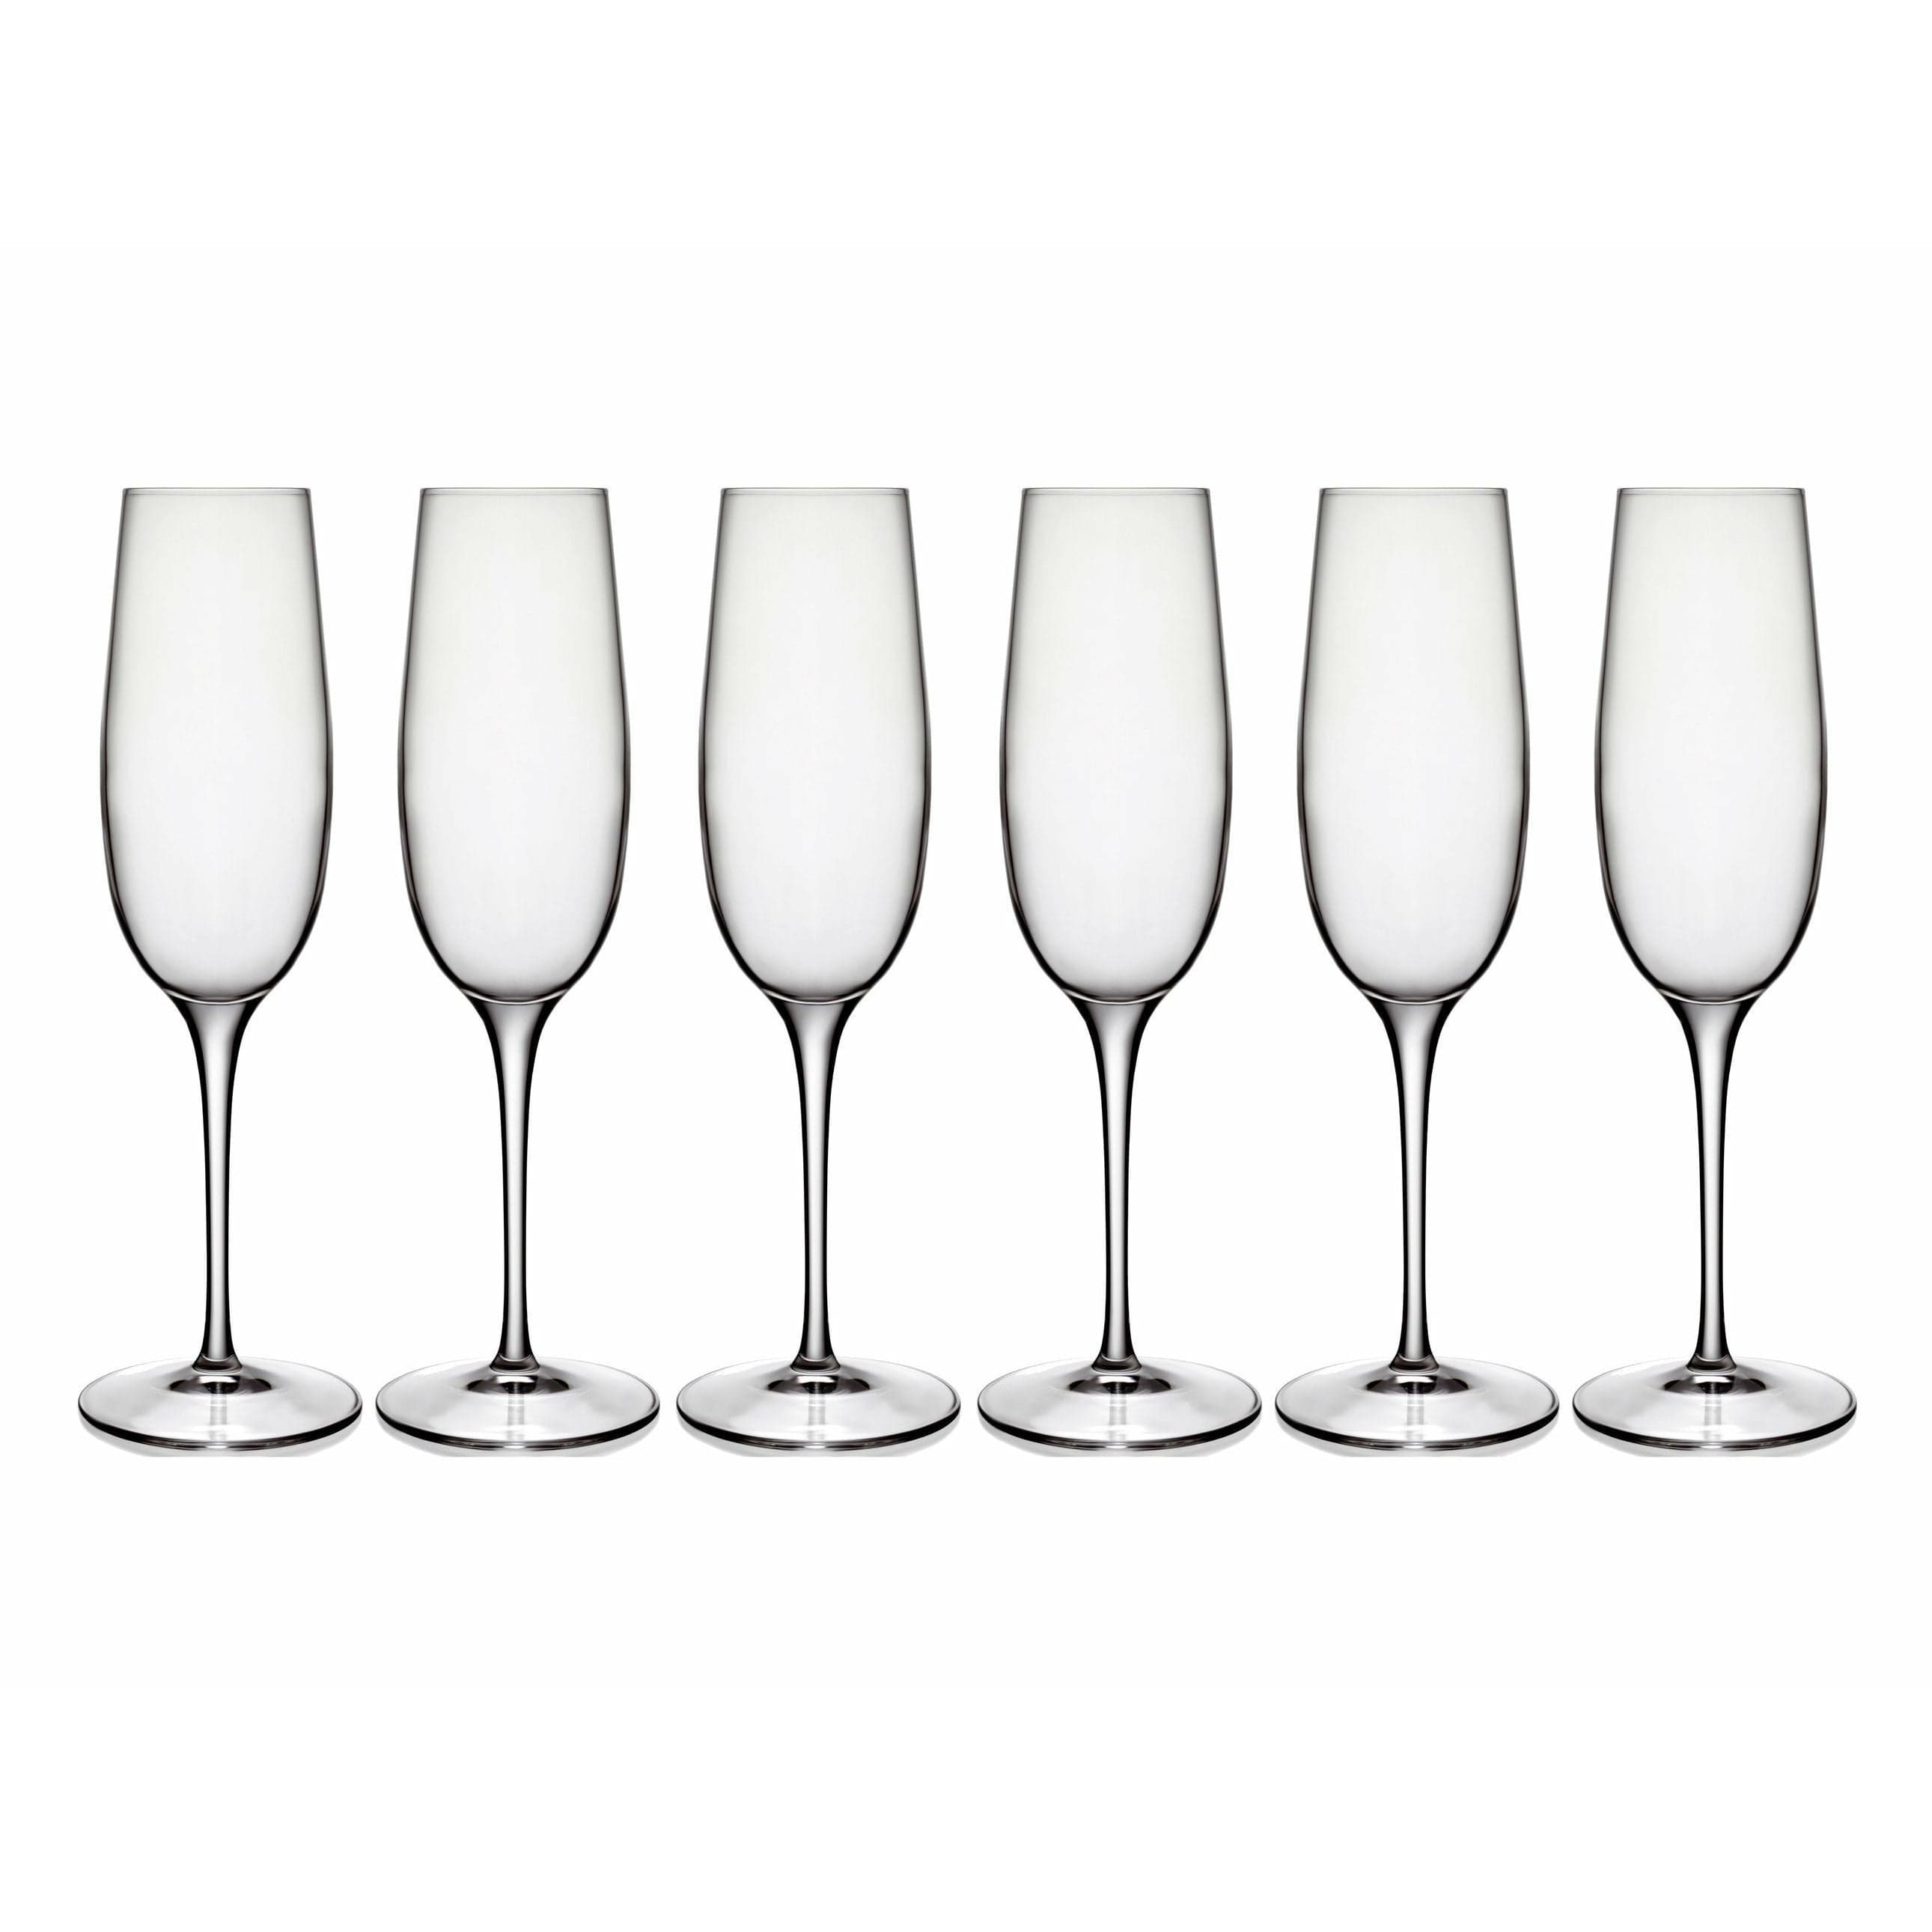 Luigi Bormioli Palace Champagne Glass, Set Of 6